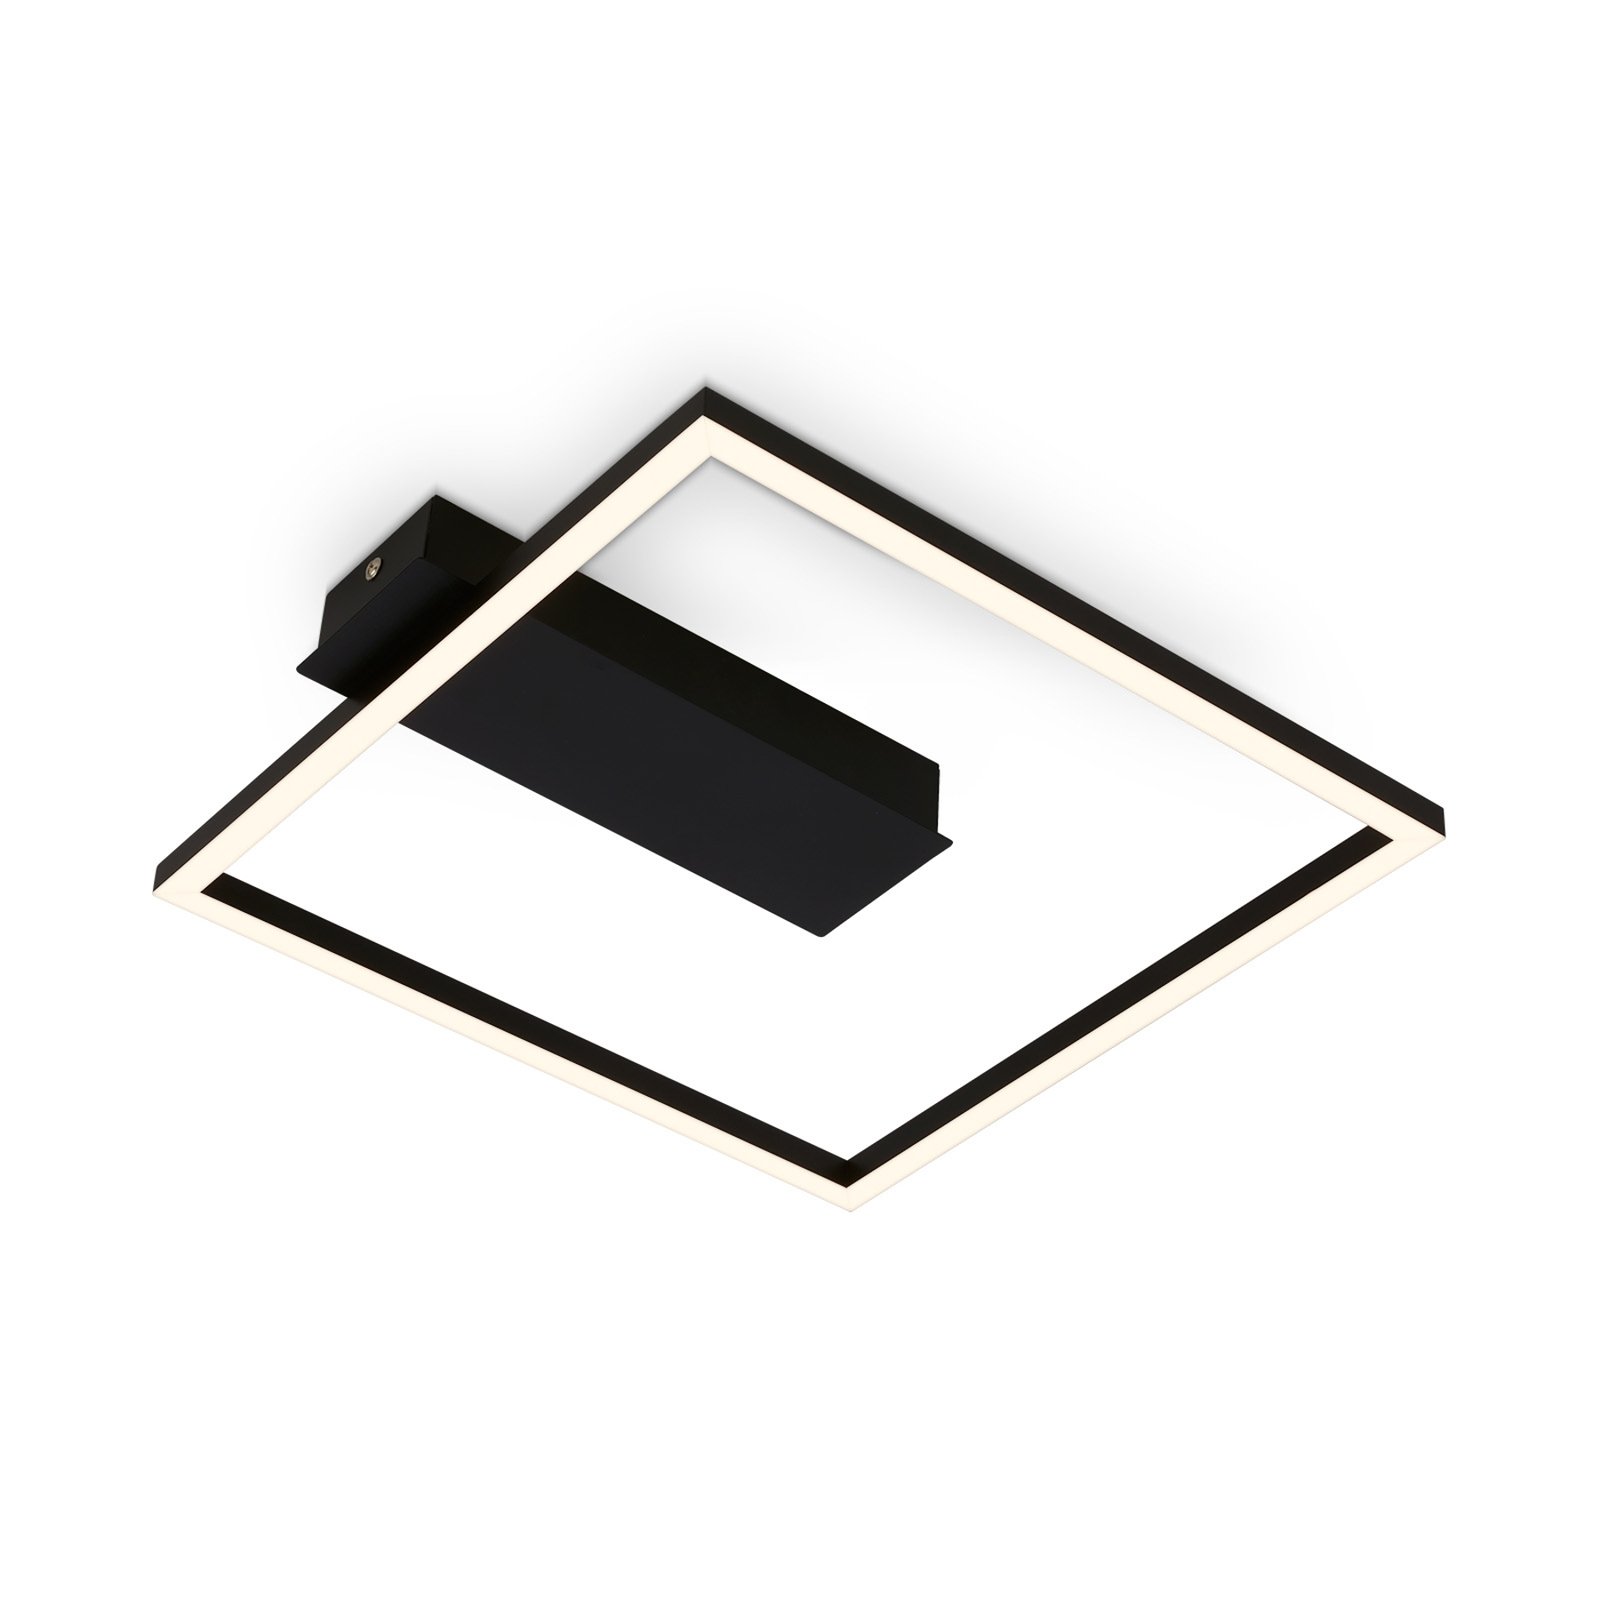 LED plafondlamp 3771 in framevorm, zwart